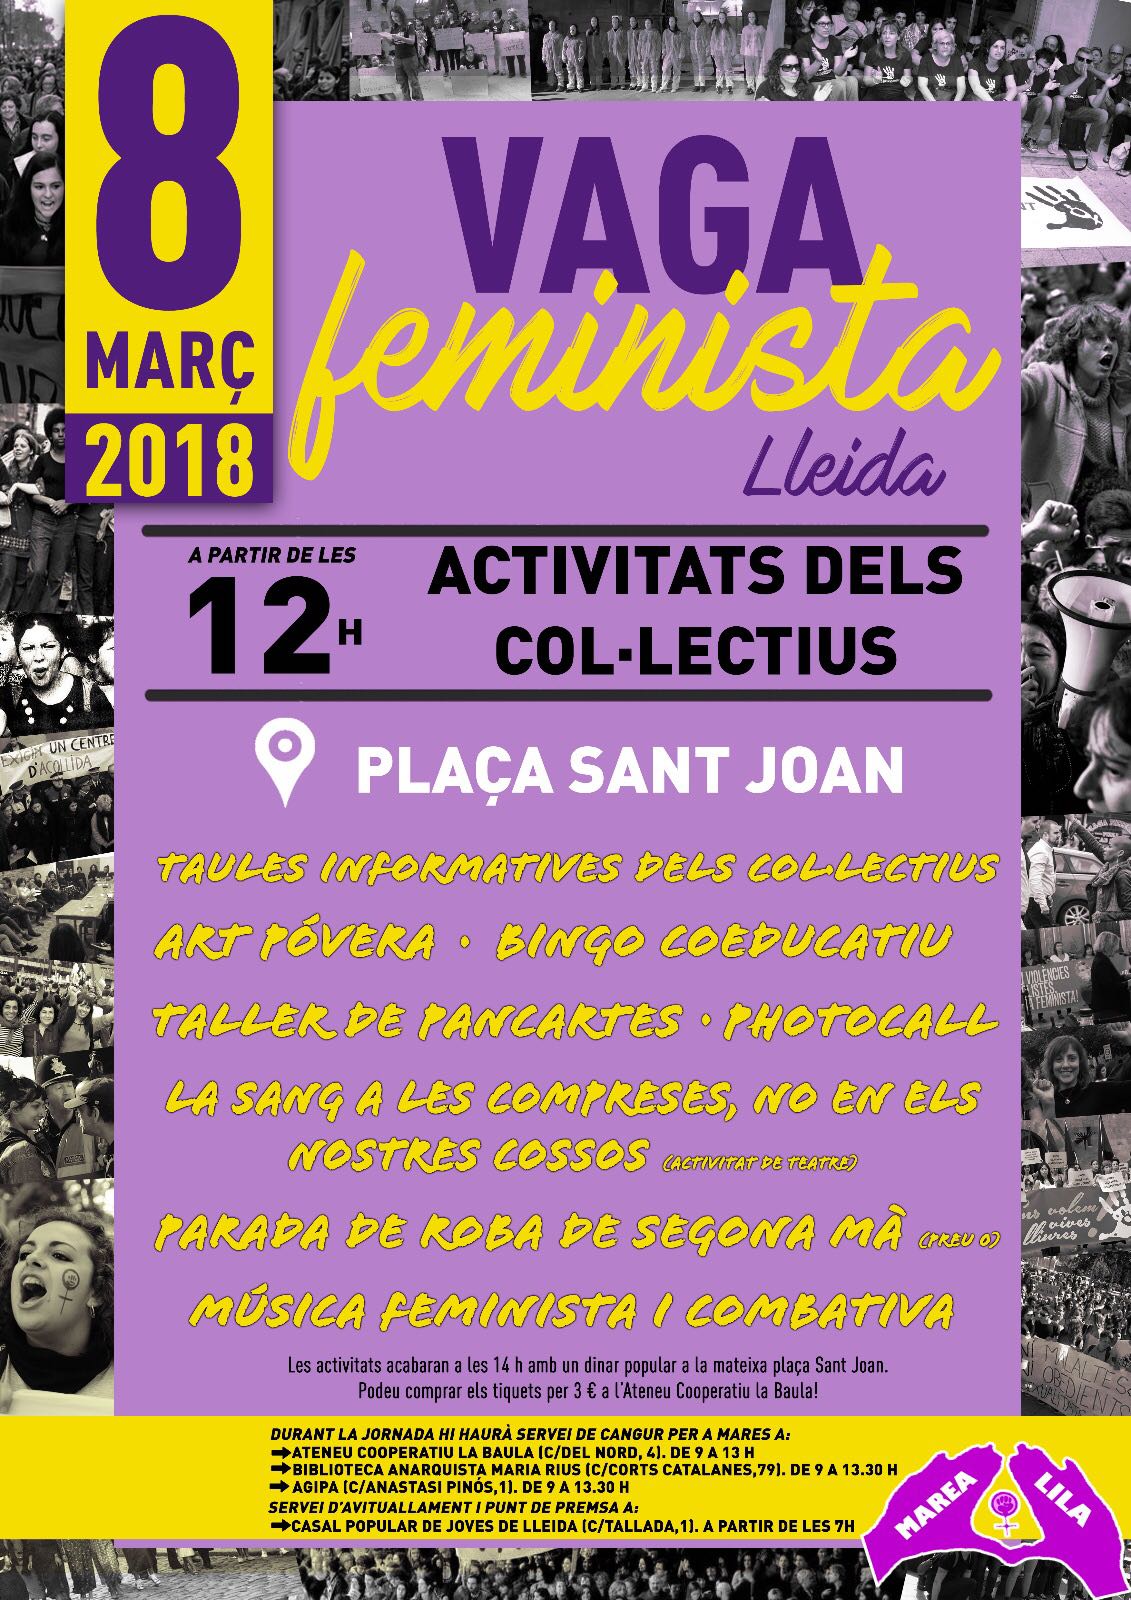 Vaga Feminista a Lleida